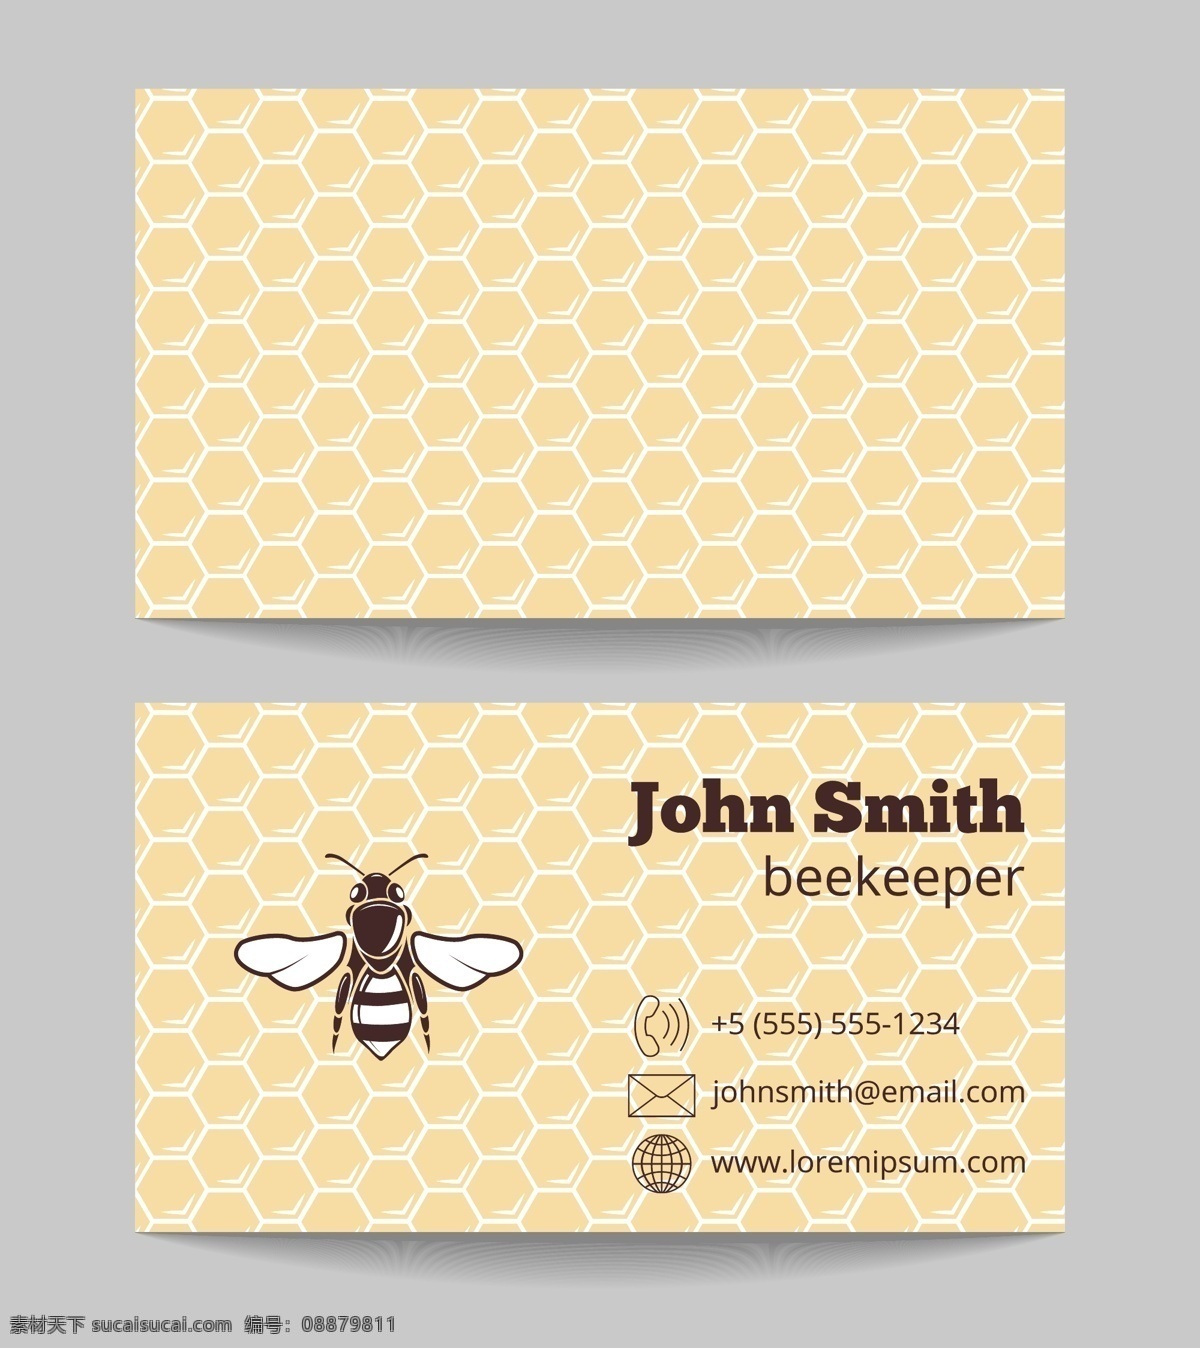 蜂蜜卡片标志 蜂蜜 蜜蜂 蜂蜜产品 蜜蜂产品 蜂蜜标志 蜂蜜logo 蜂蜜头像 蜜蜂头像 蜂王头像 蜜蜂logo 蜂蜜卡片 蜜蜂卡片 蜂巢 名片卡片